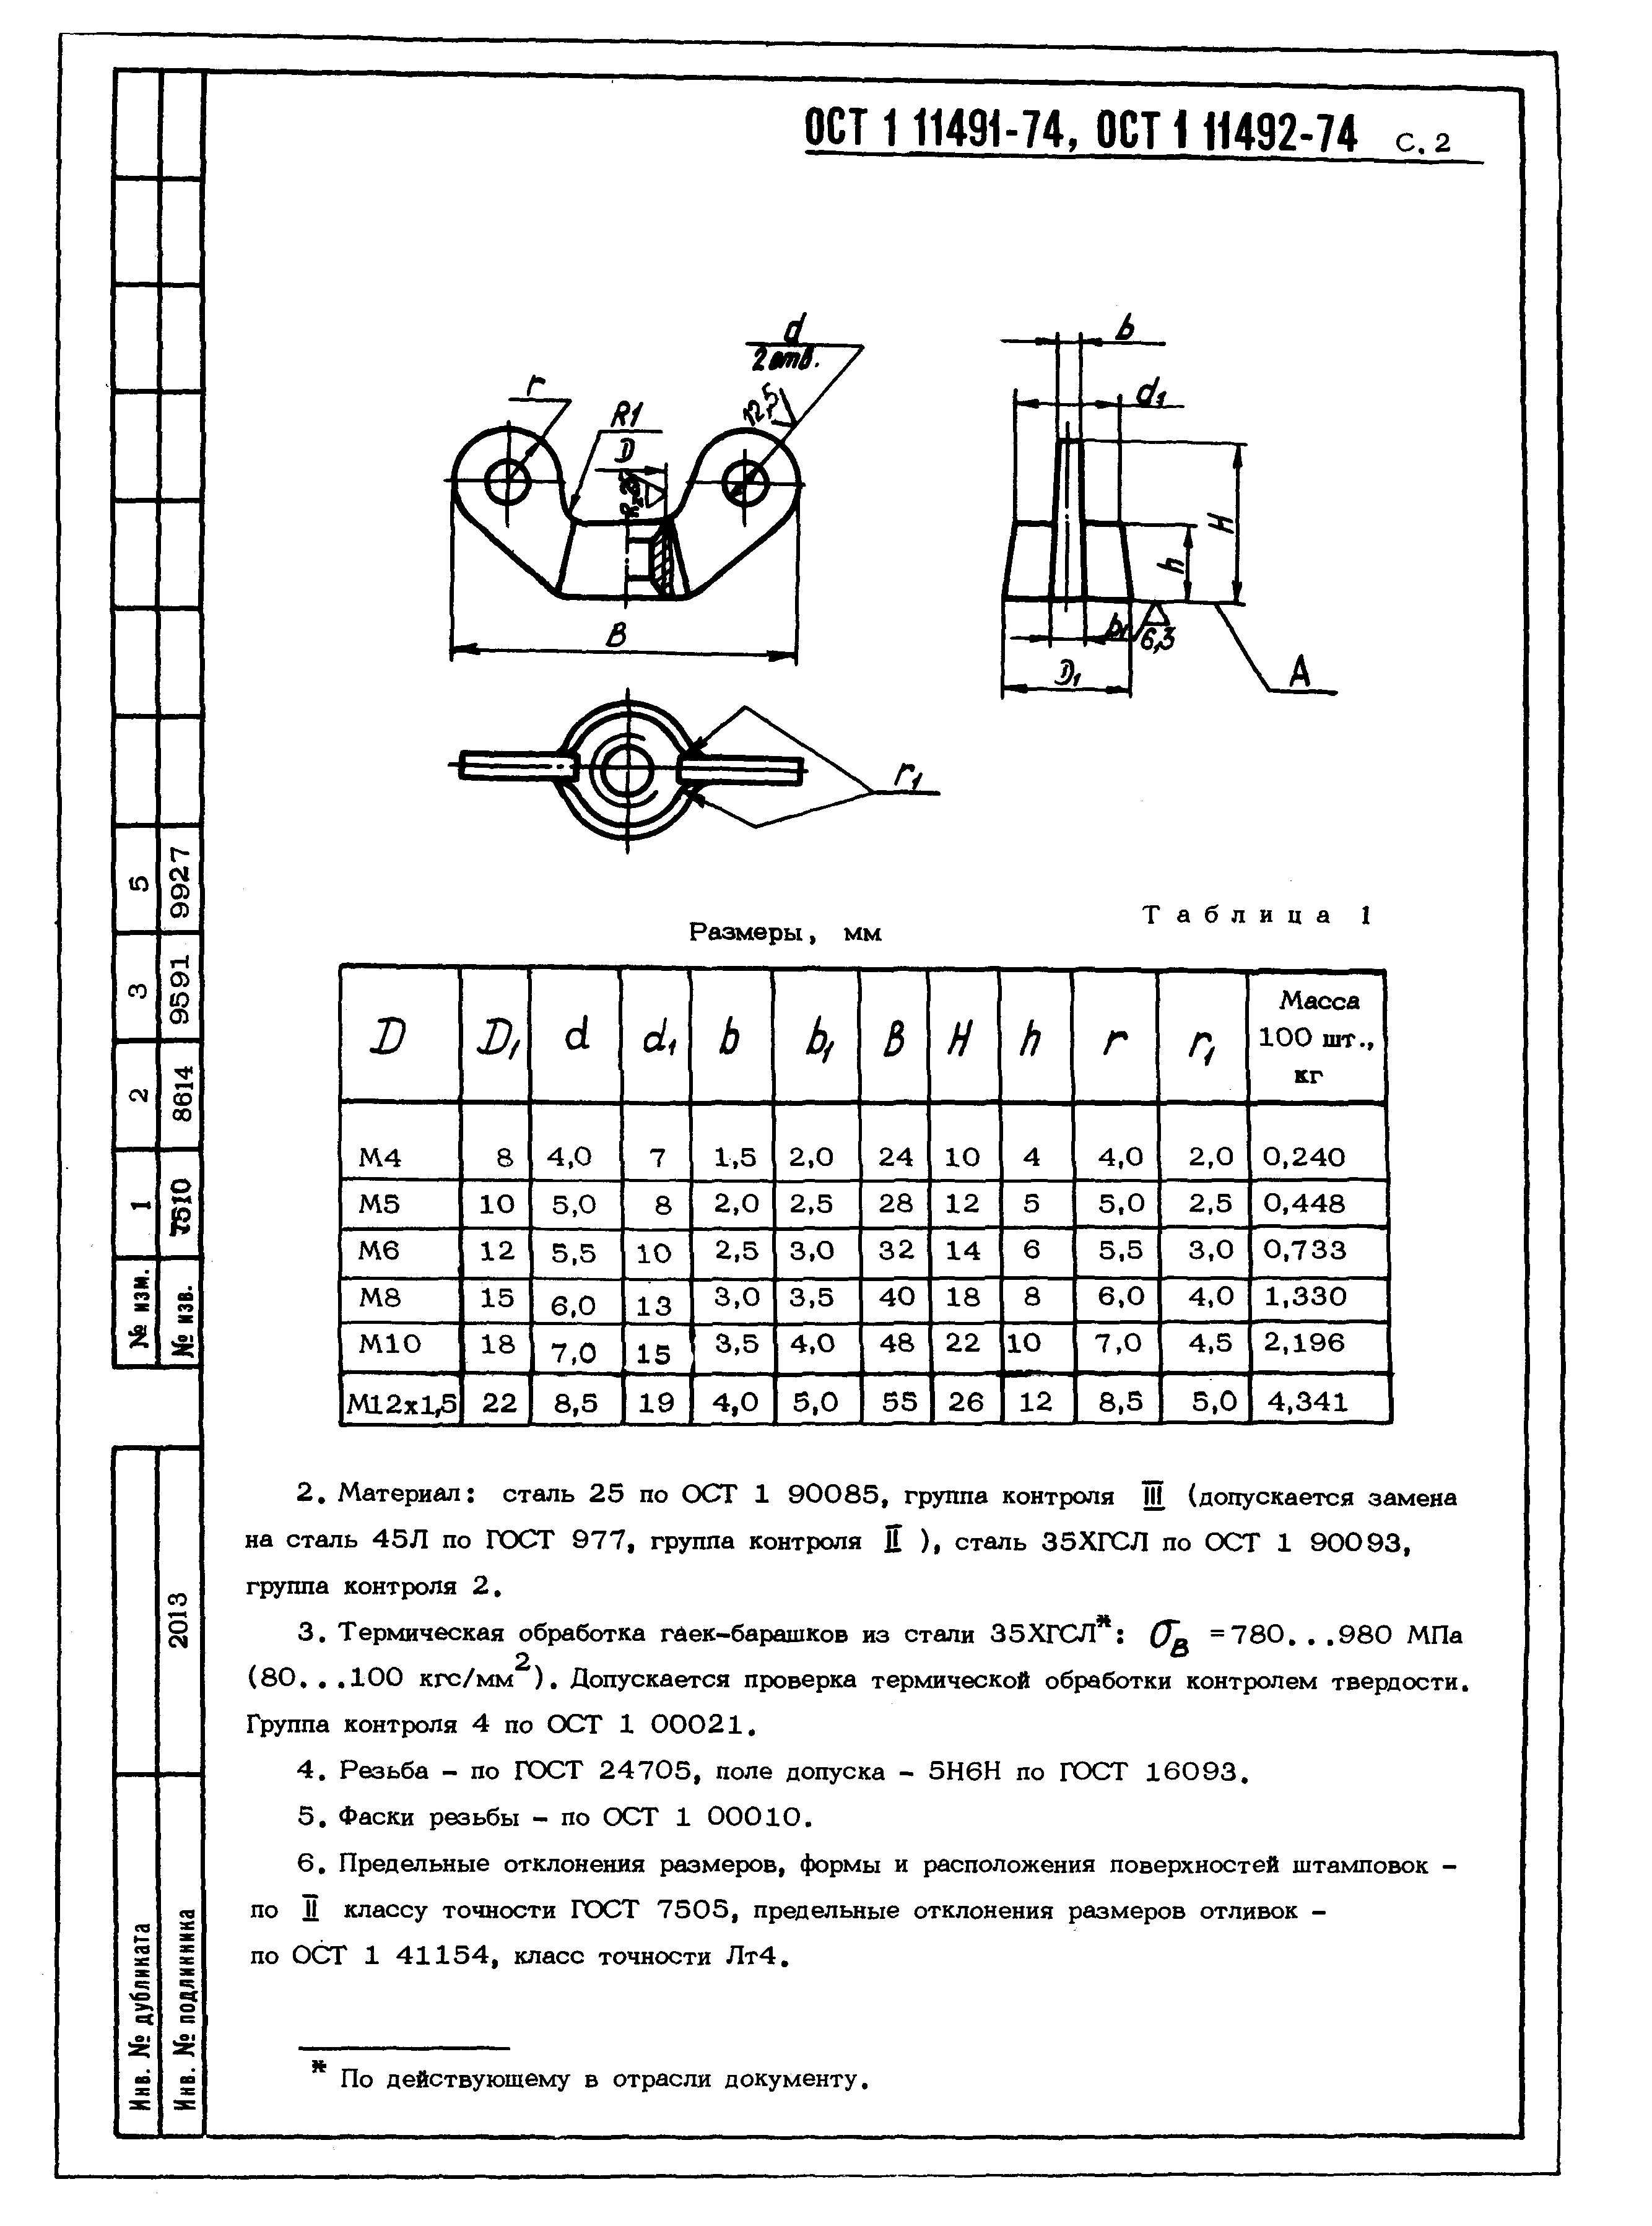 ОСТ 1 11491-74